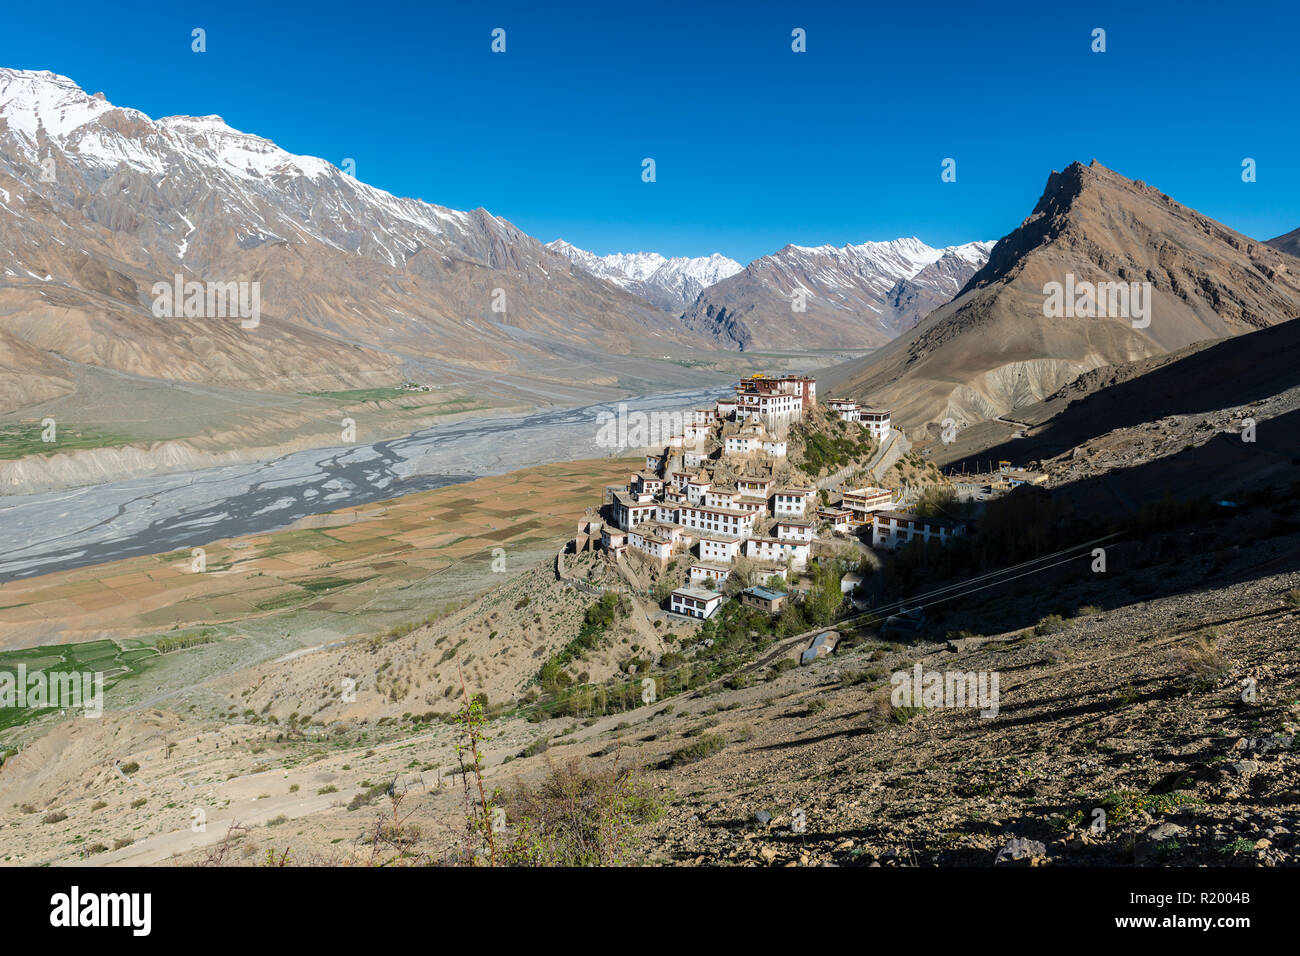 Vista aerea su Ki Gompa, un tibetano monastero buddista situato sulla sommità di una collina ad una altitudine di 4,166 metri, la Spiti Valley e coperta di neve mount Foto Stock